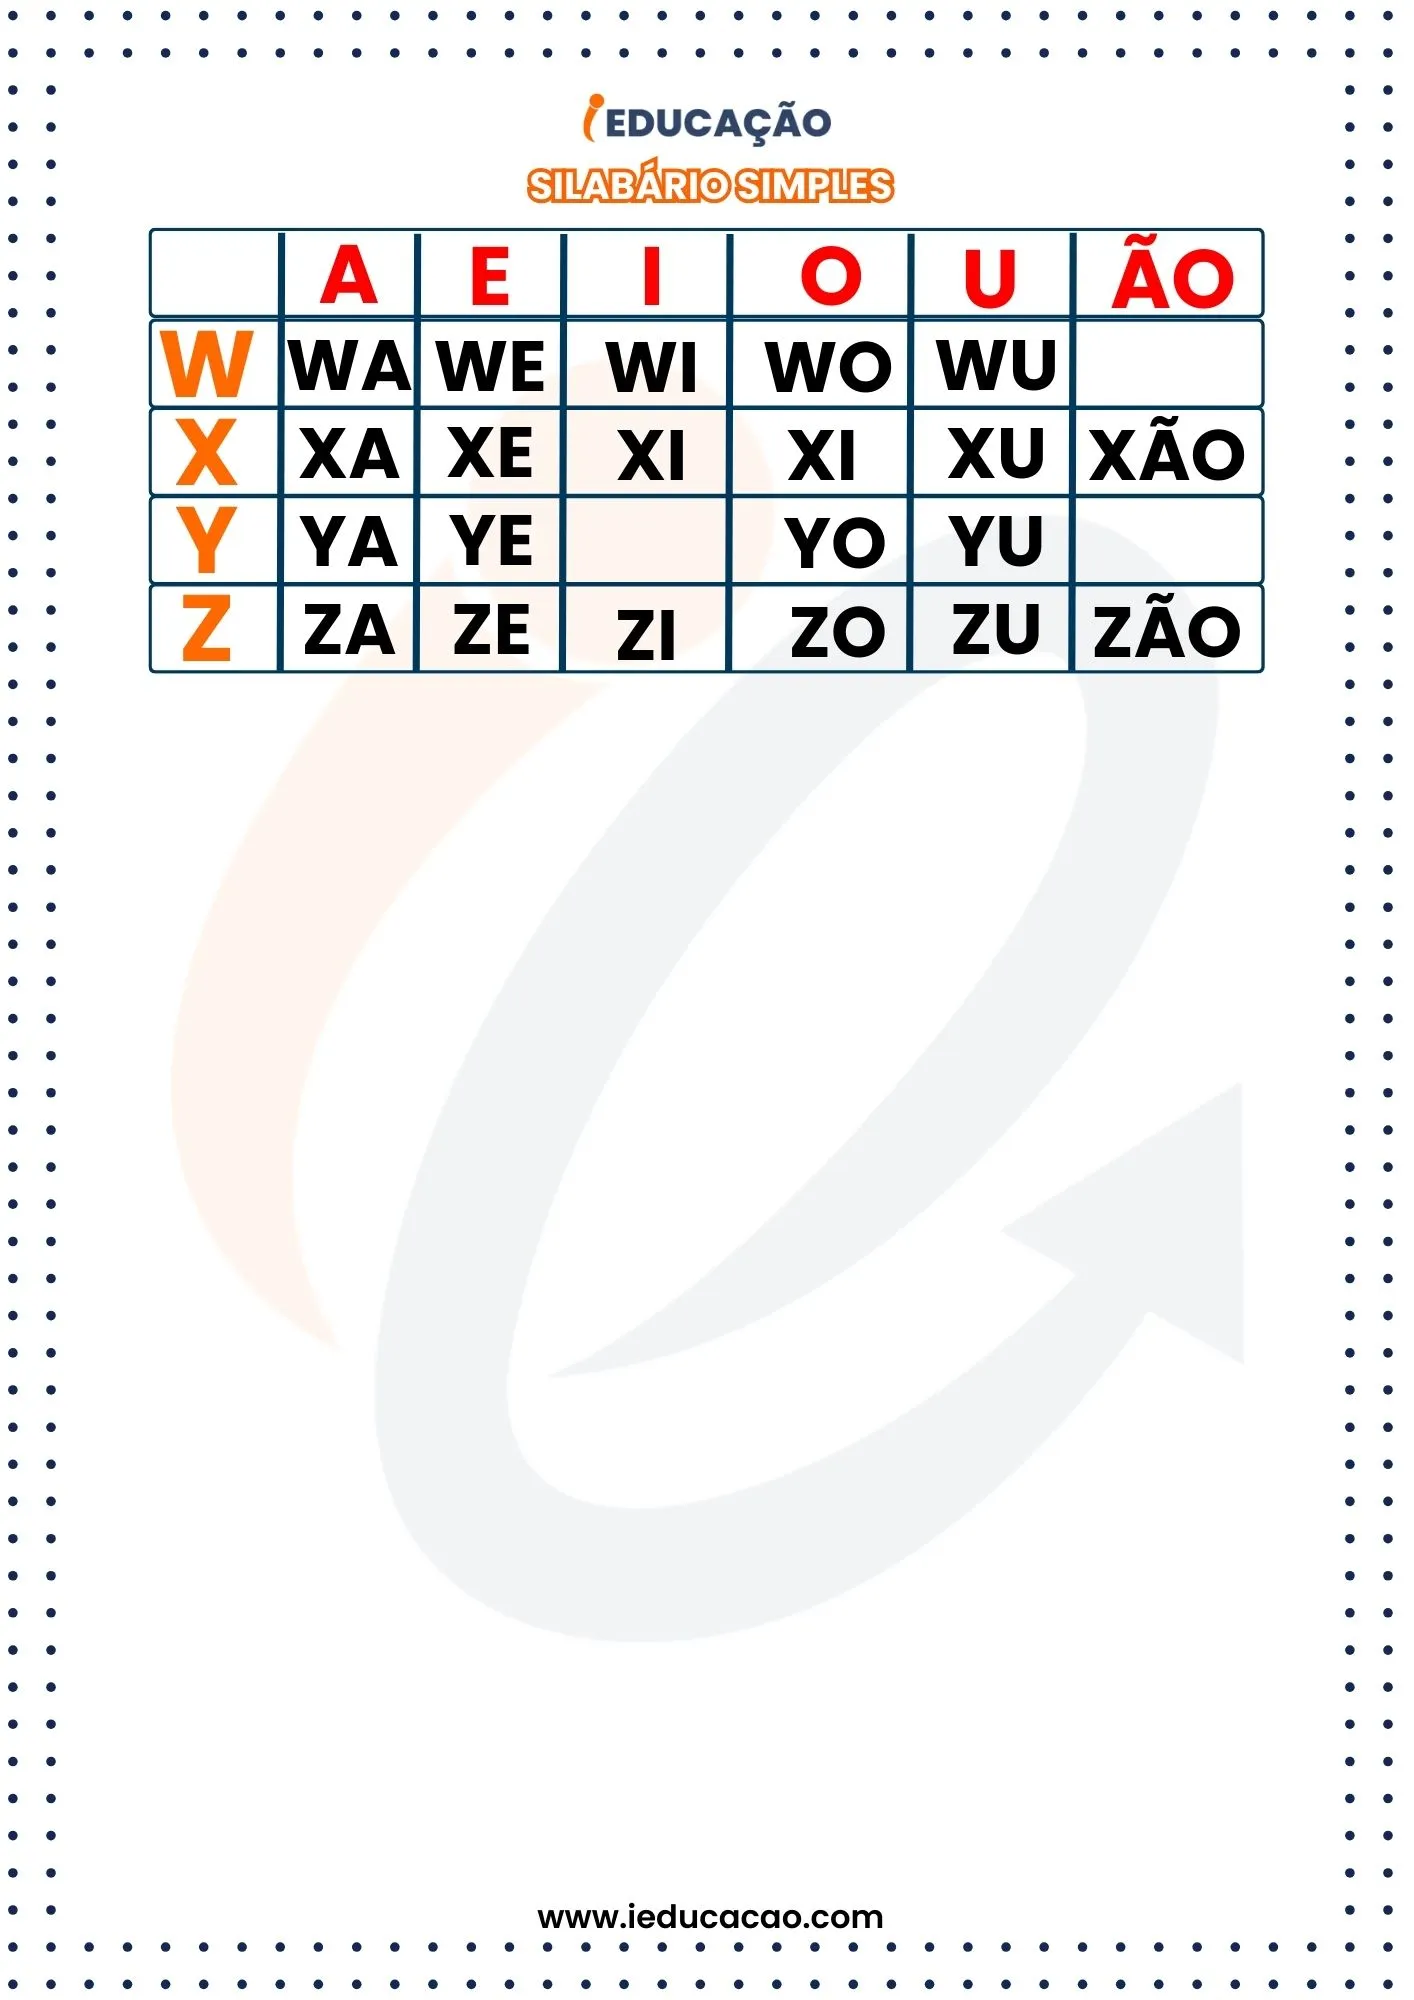 Silabário Simples com letras maiúsculas W e Z